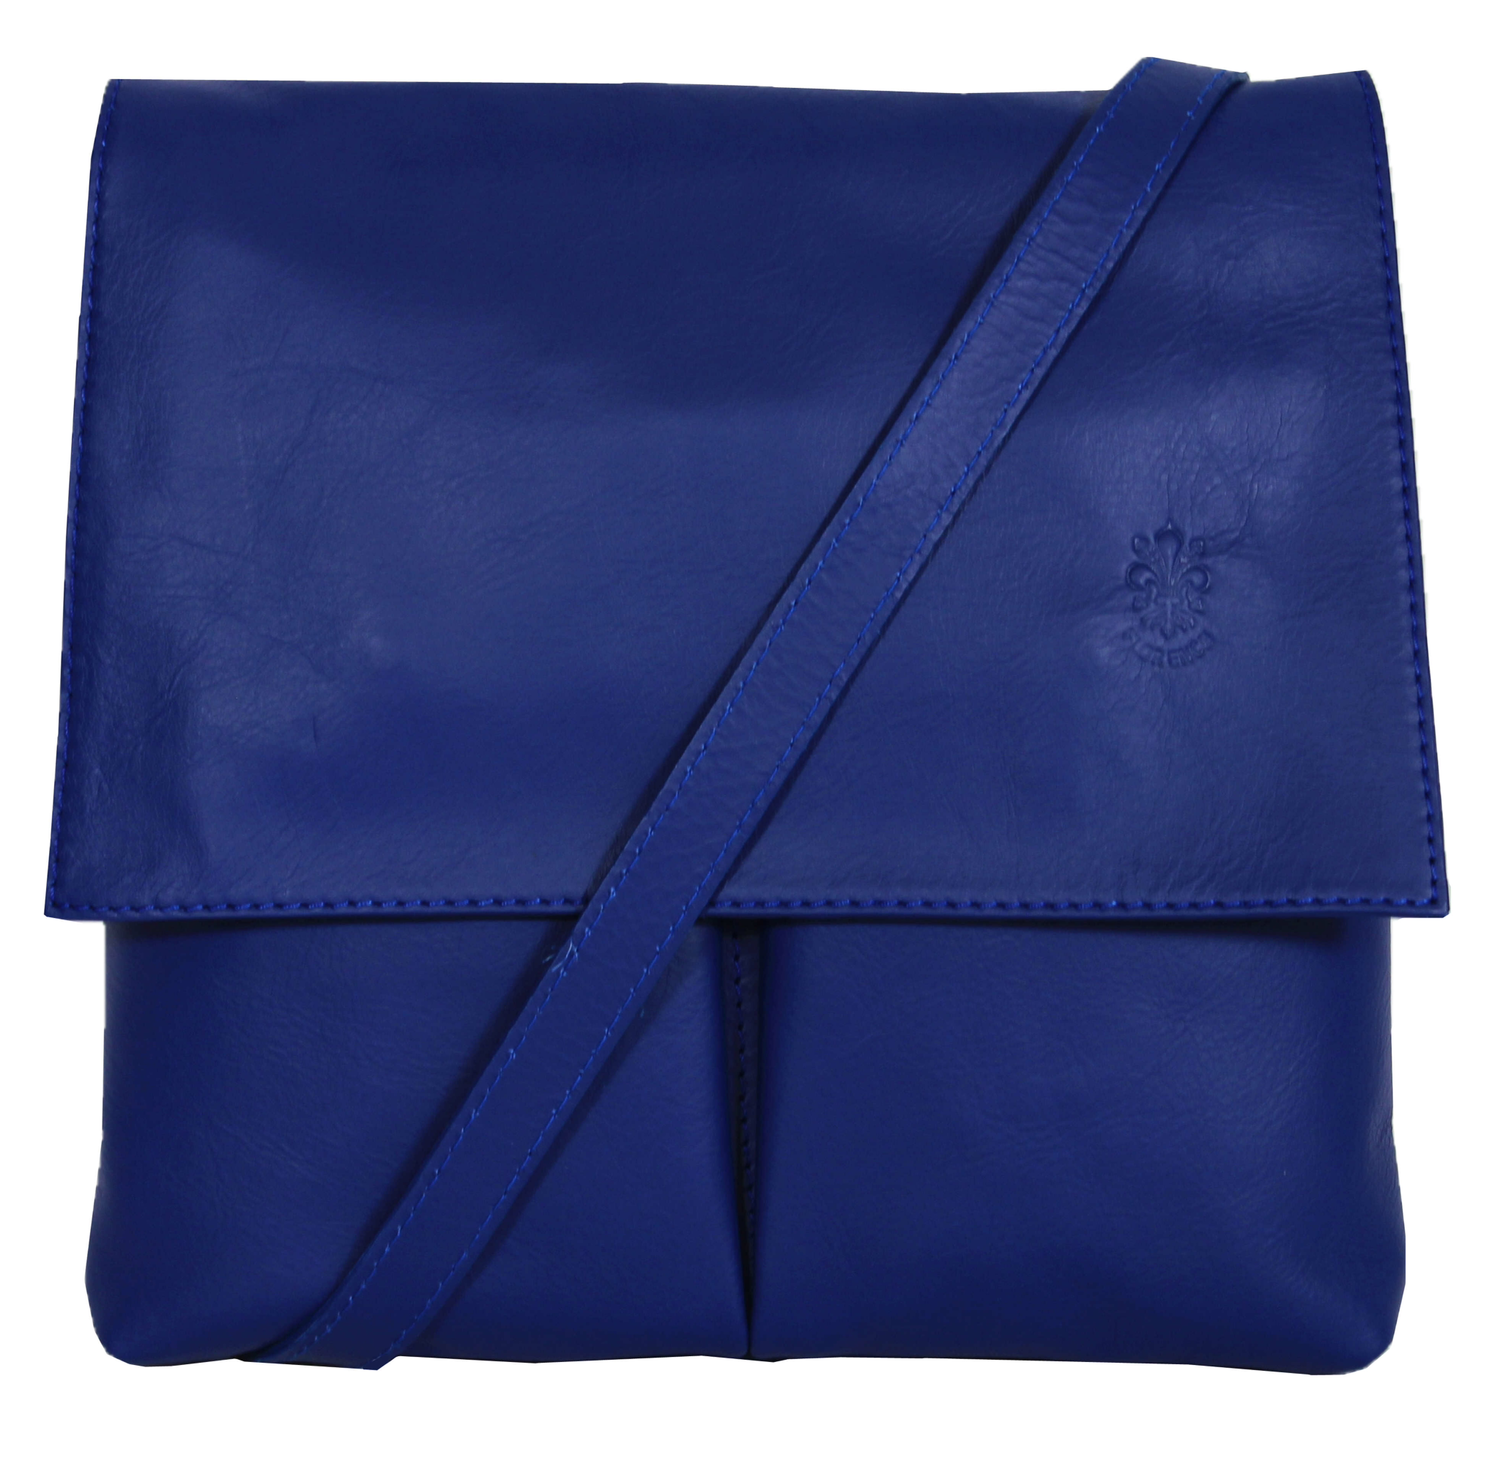 Royal Blue Soft Leather Messenger Bag